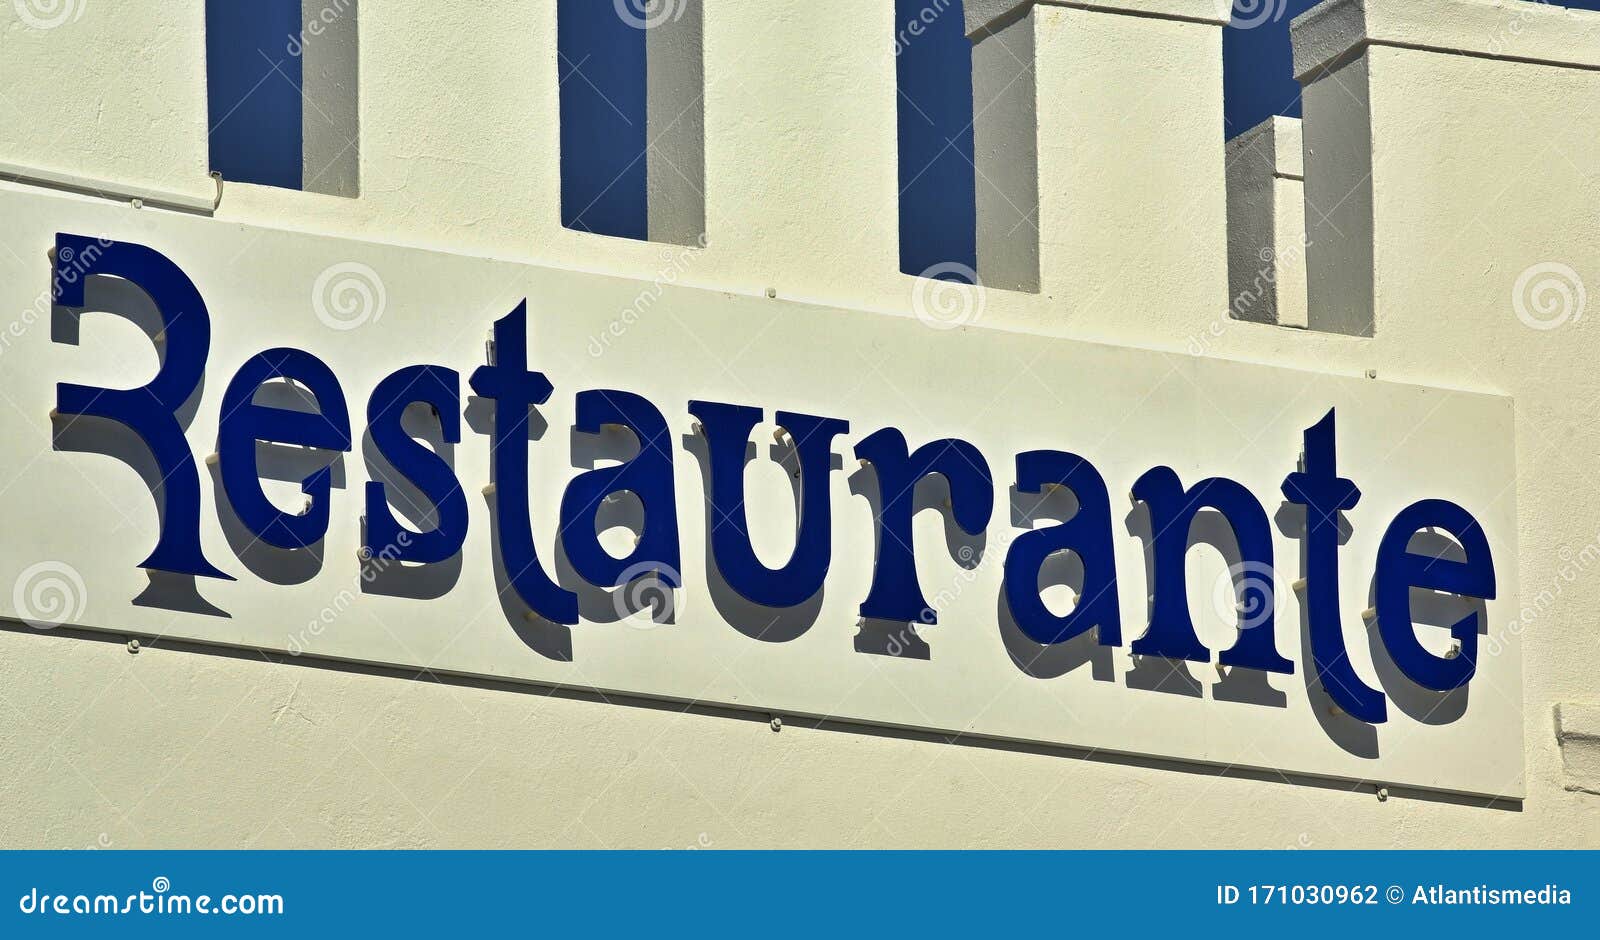 restaurante - lettering in blue